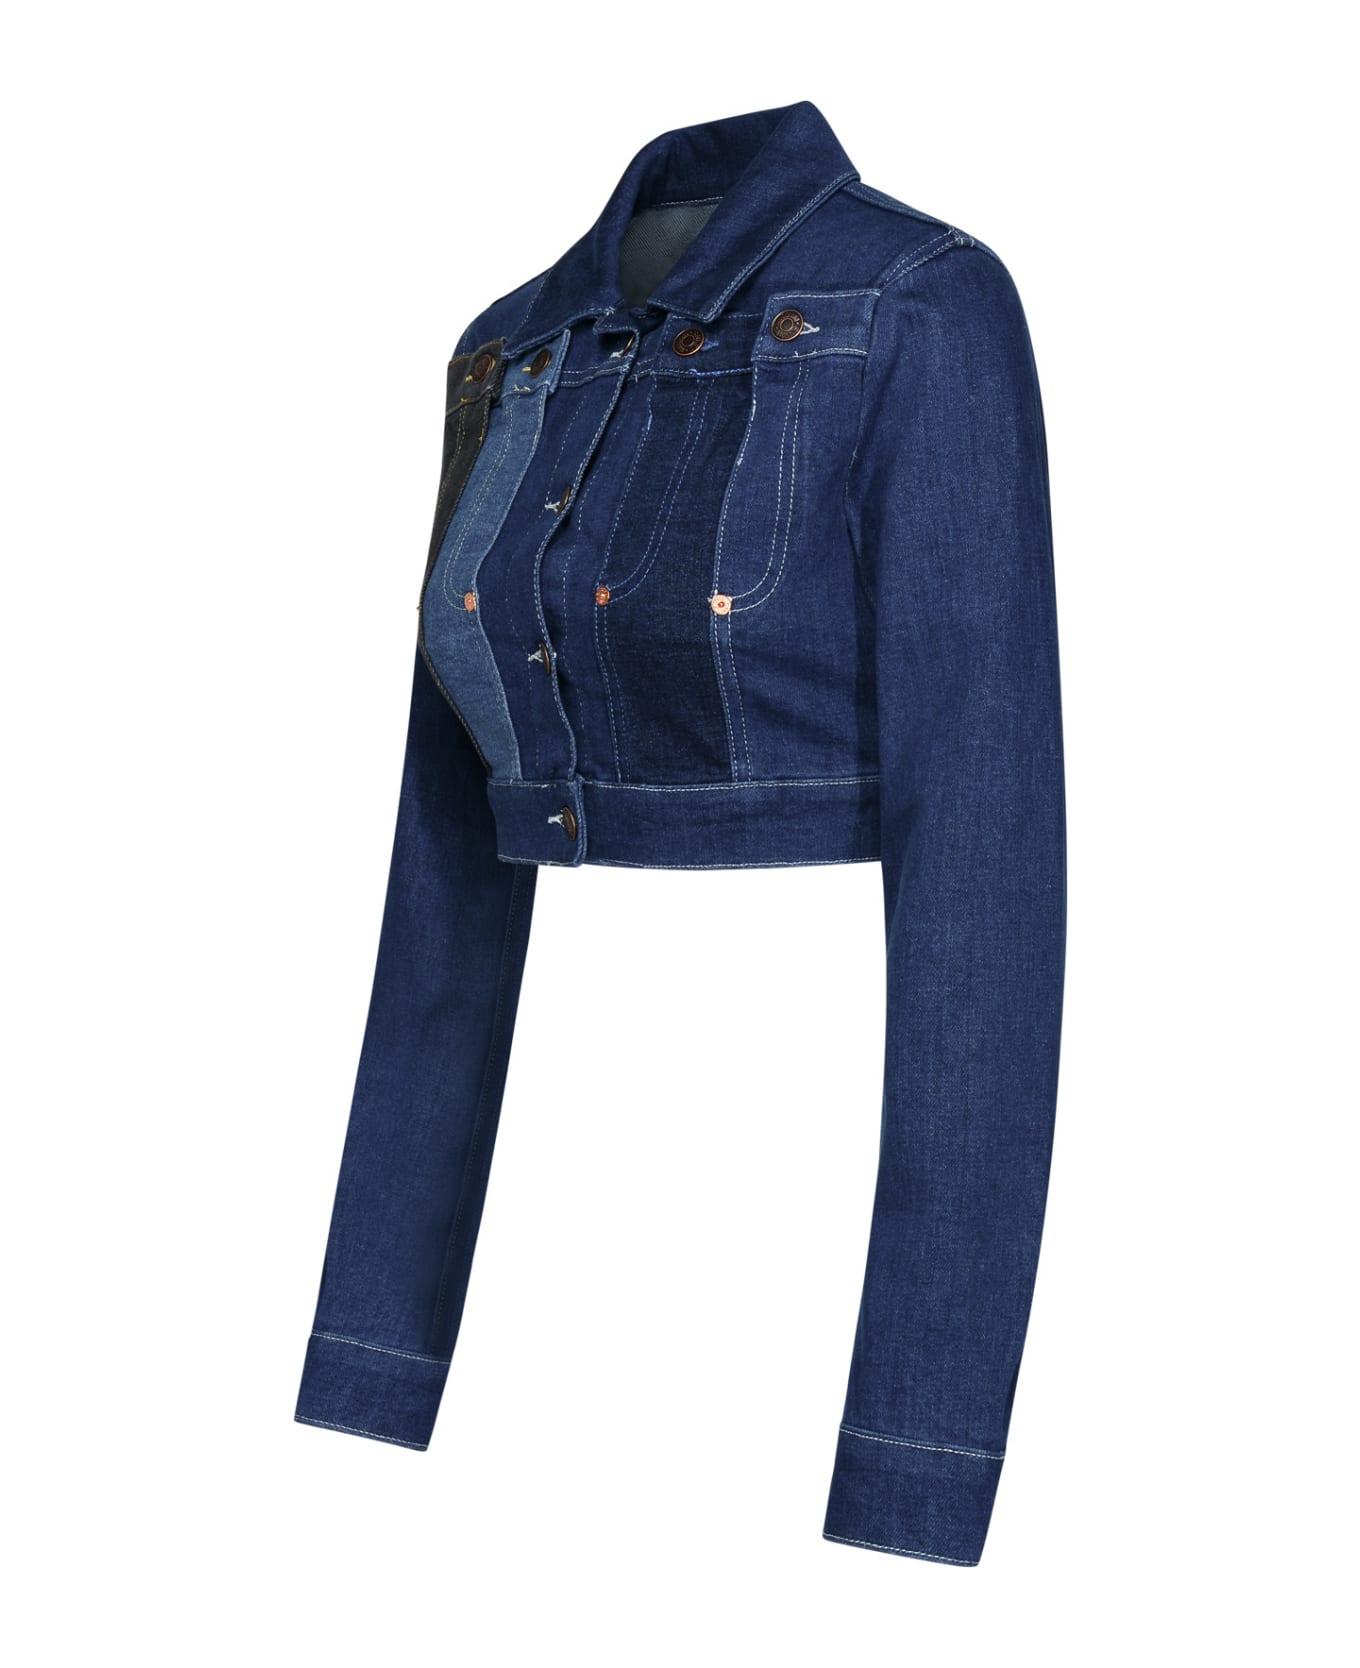 M05CH1N0 Jeans Blue Cotton Jacket - Blue